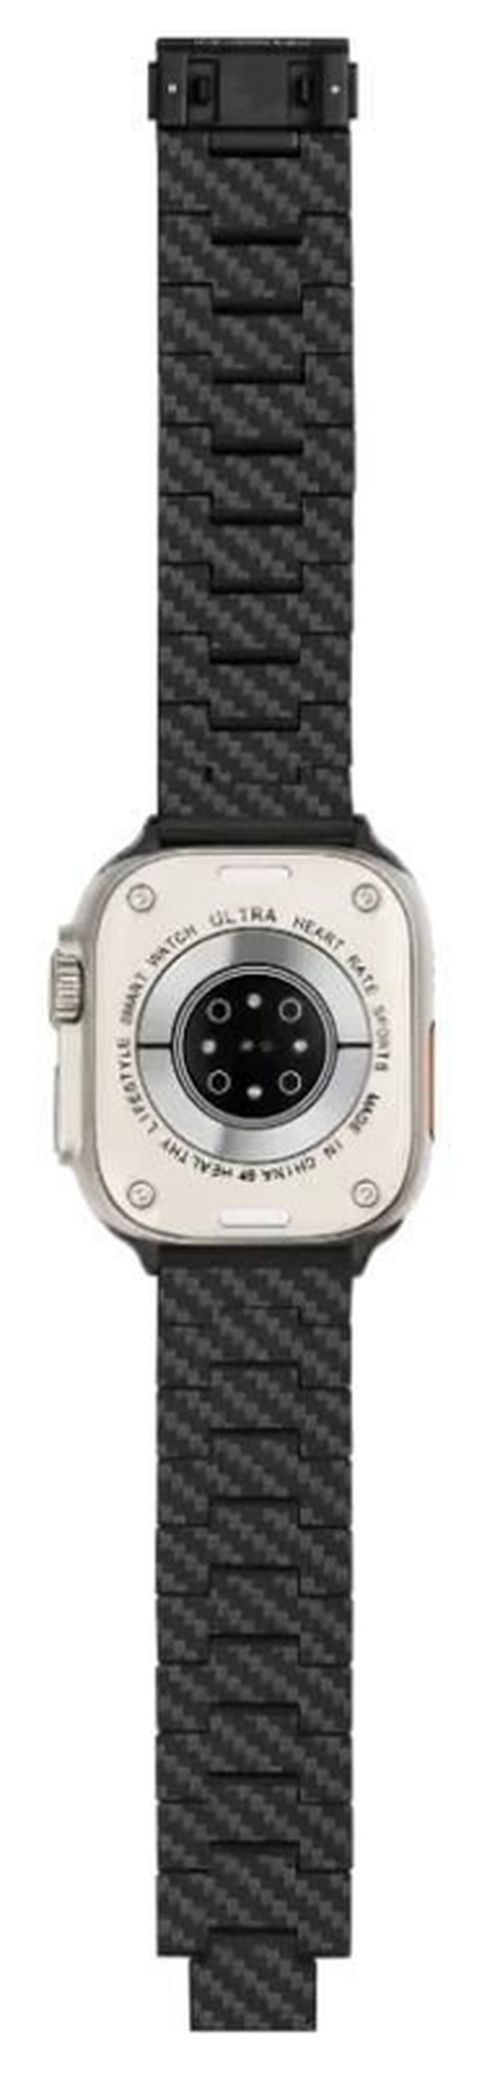 купить Ремешок Pitaka Apple Watch Bands (fits all Apple Watch Models) (AWB2308) в Кишинёве 